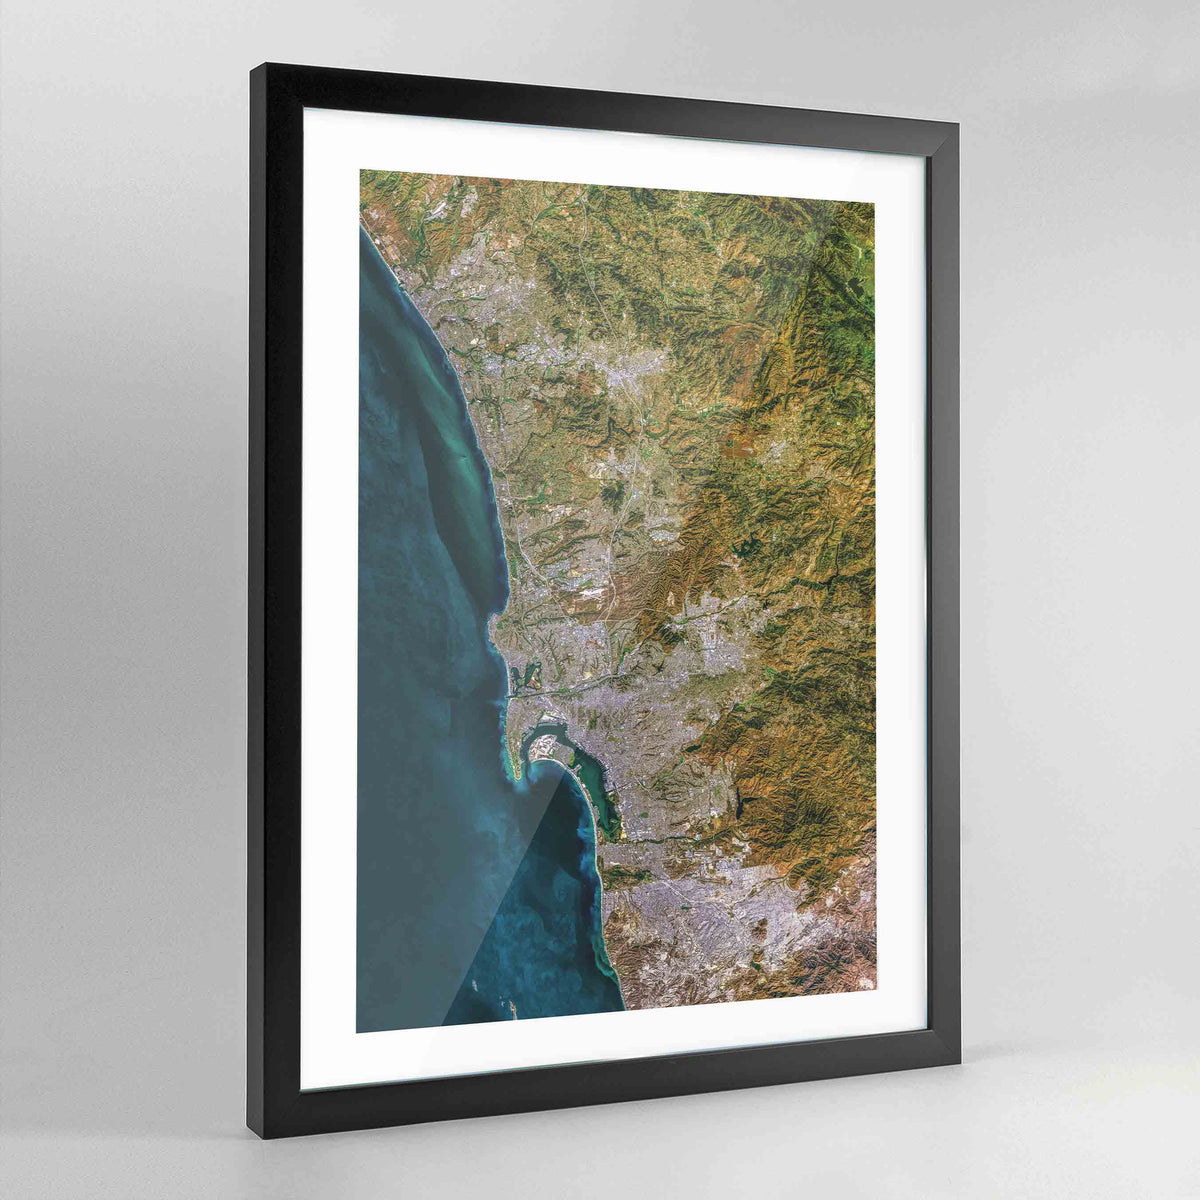 San Diego Earth Photography Art Print - Framed